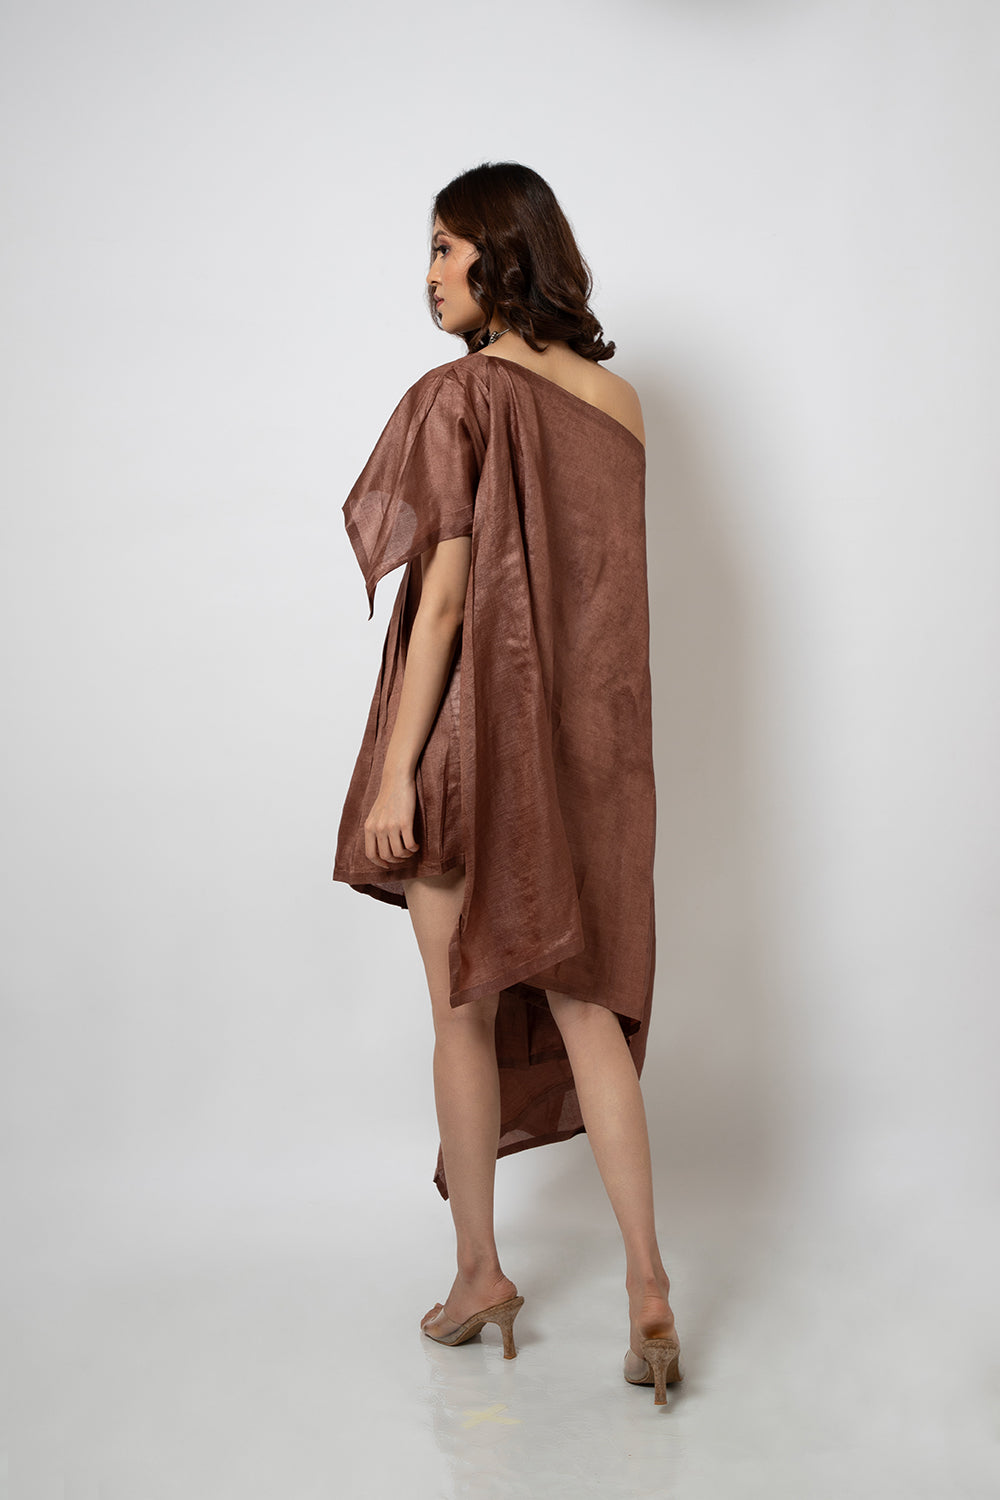 94. A Brown silk blend zero waste dress